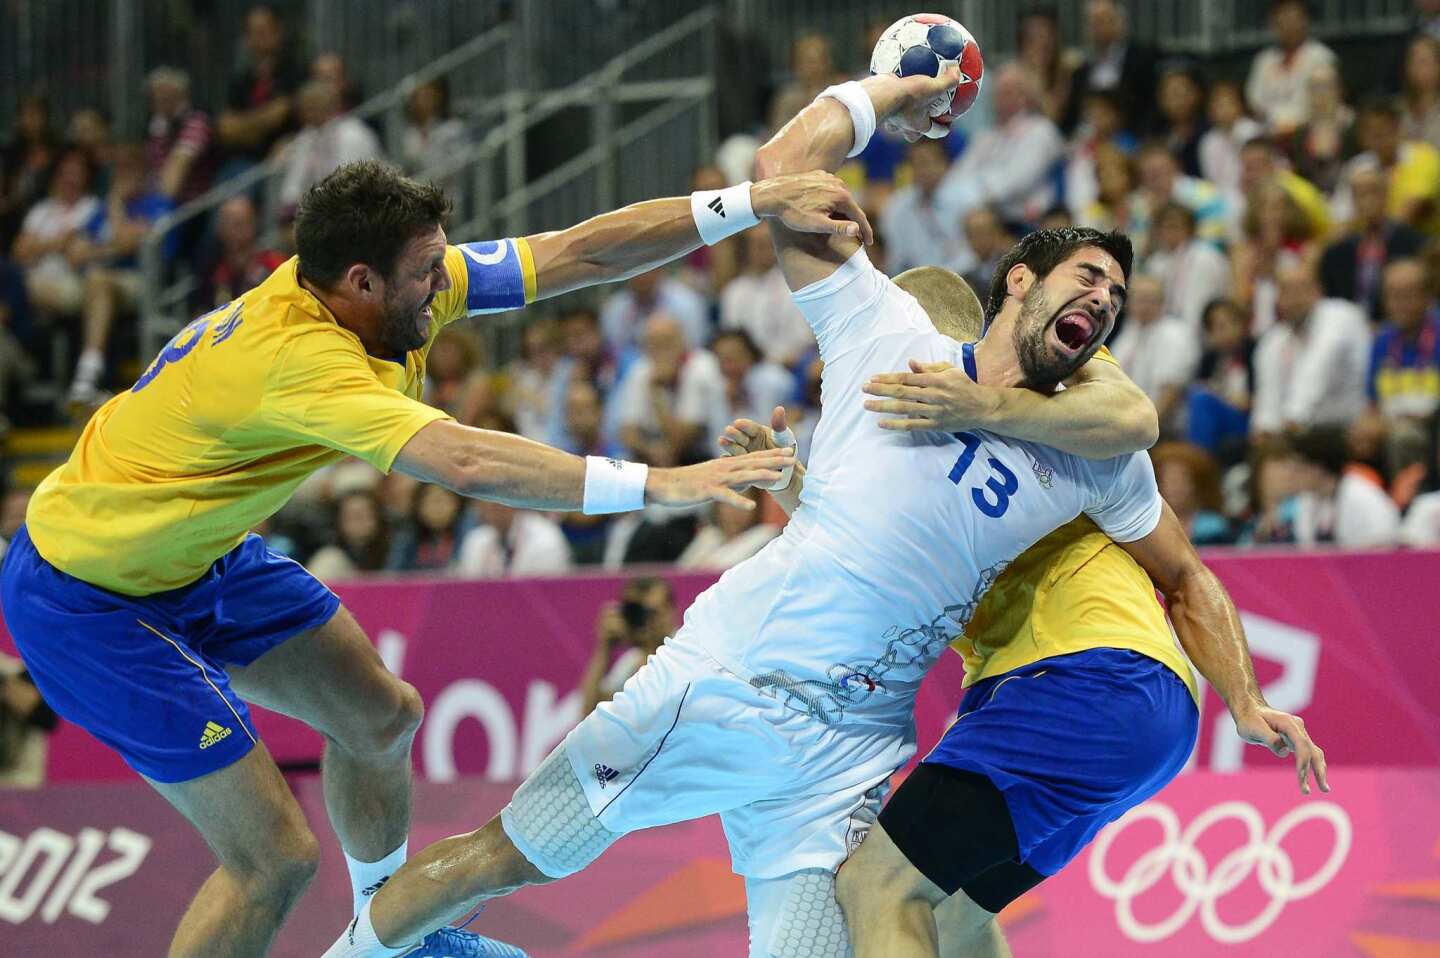 Handball battle